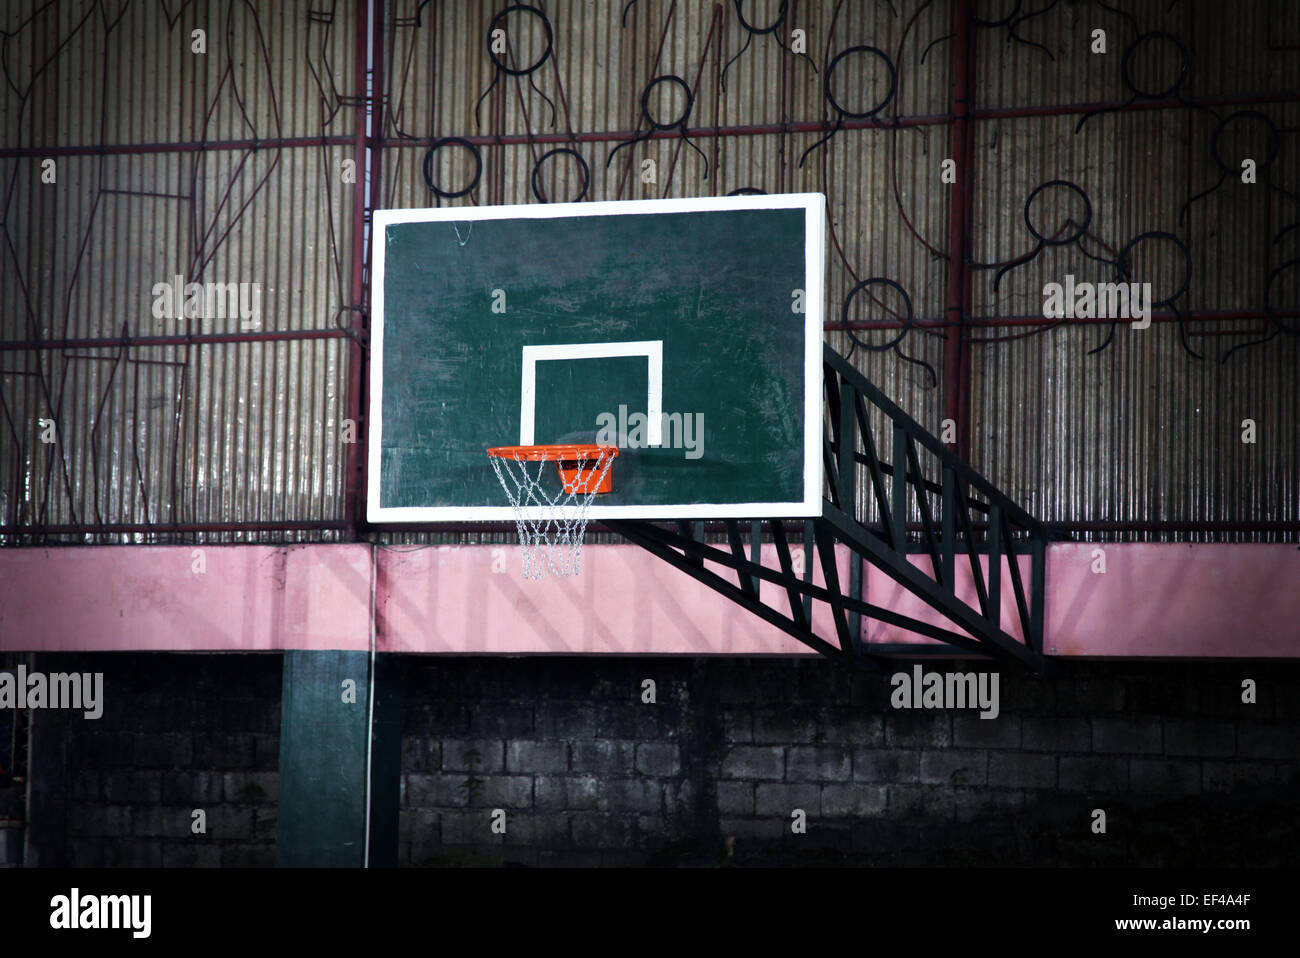 C'est une photo d'un détail d'une aire de basket-ball intérieur. Wee voir le Conseil avec l'anneau. Banque D'Images